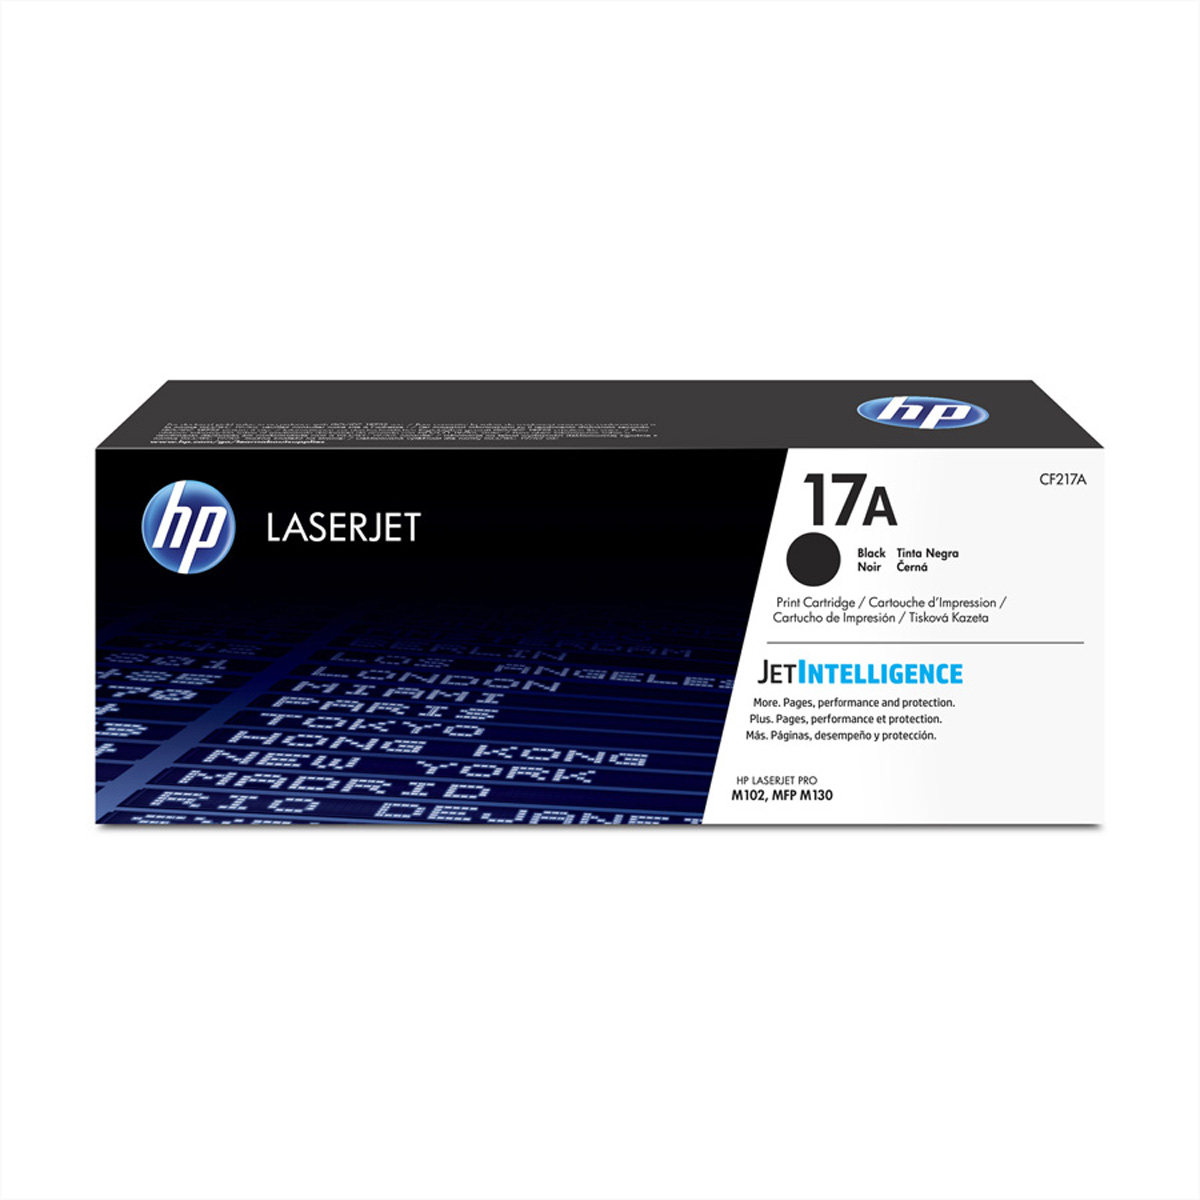 CF217A, HP Druckkassette schwarz, Nr. 17A, ca. 1.600 Seiten für HP LJ Pro M102a, MFP M130a